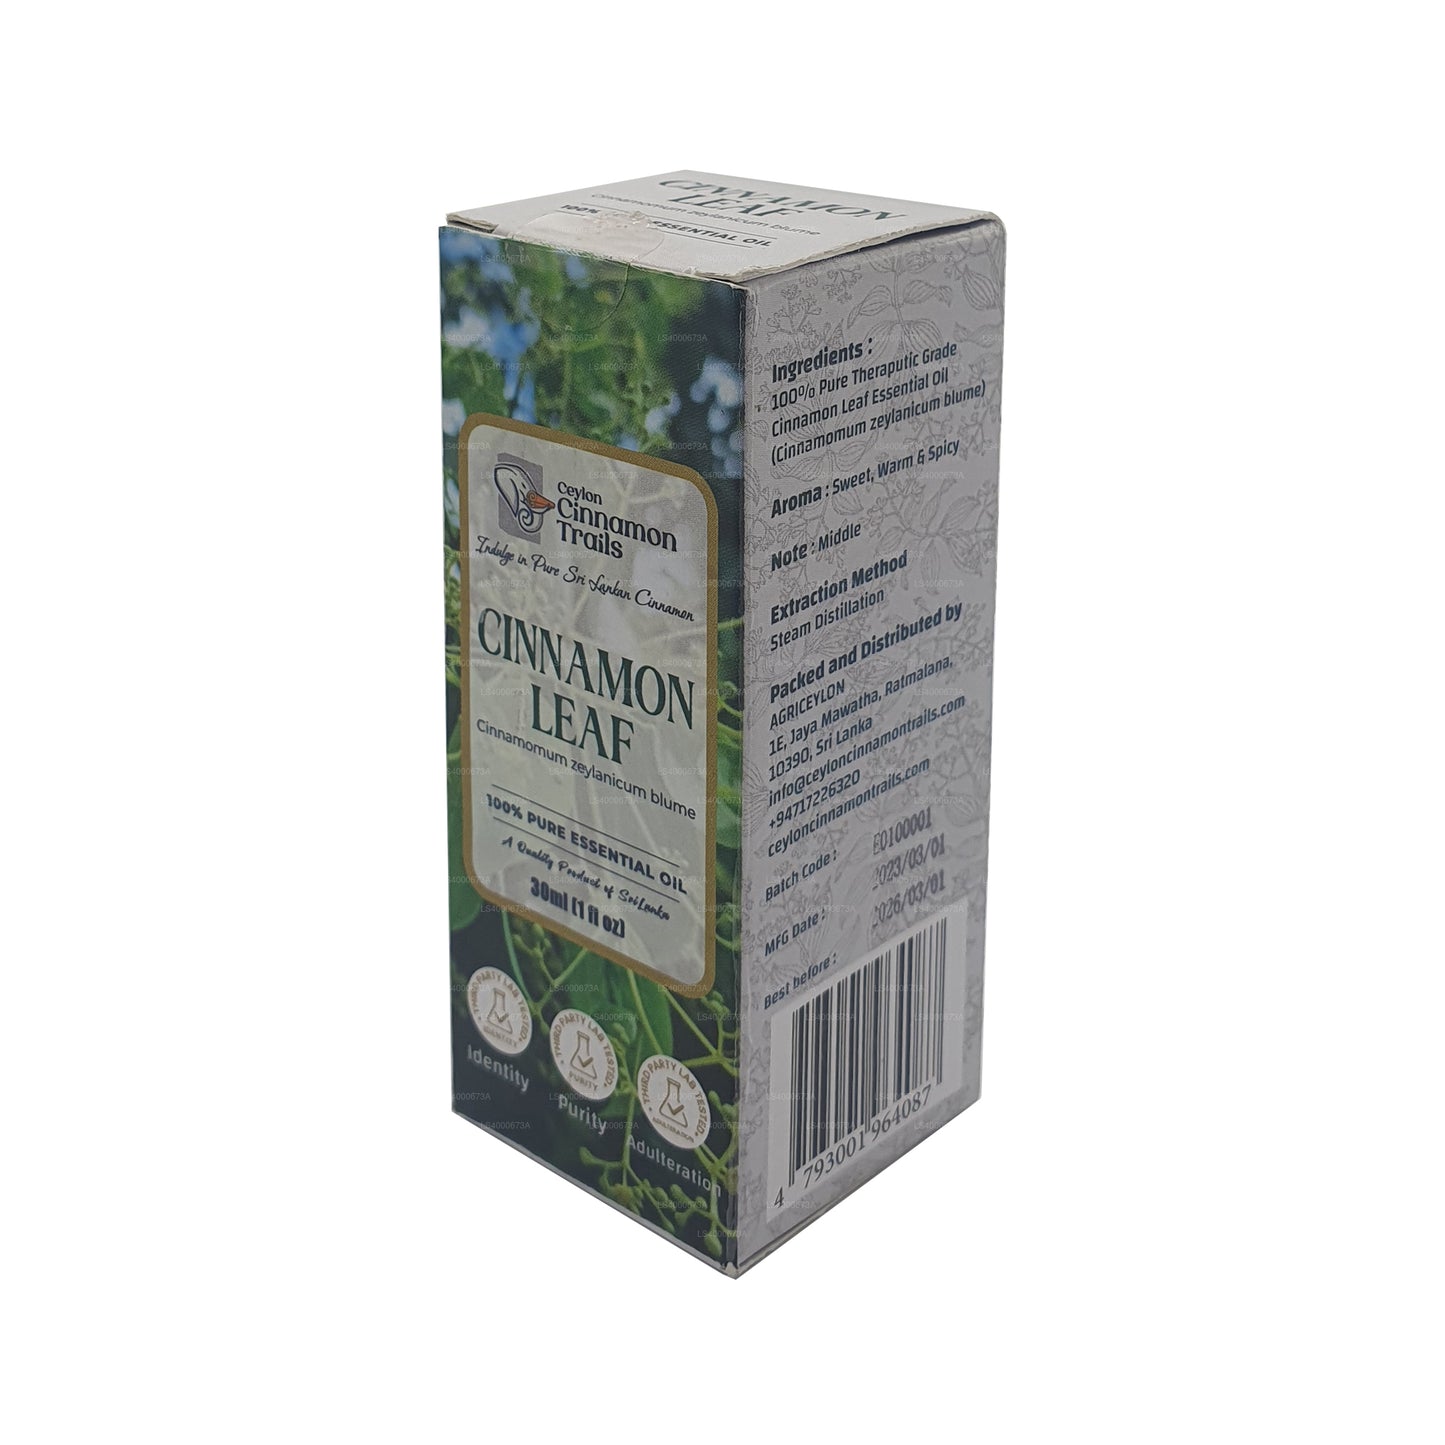 Ceylon Cinnamon Trails Cinnamon Leaf Essentiel Olie (10 ml)